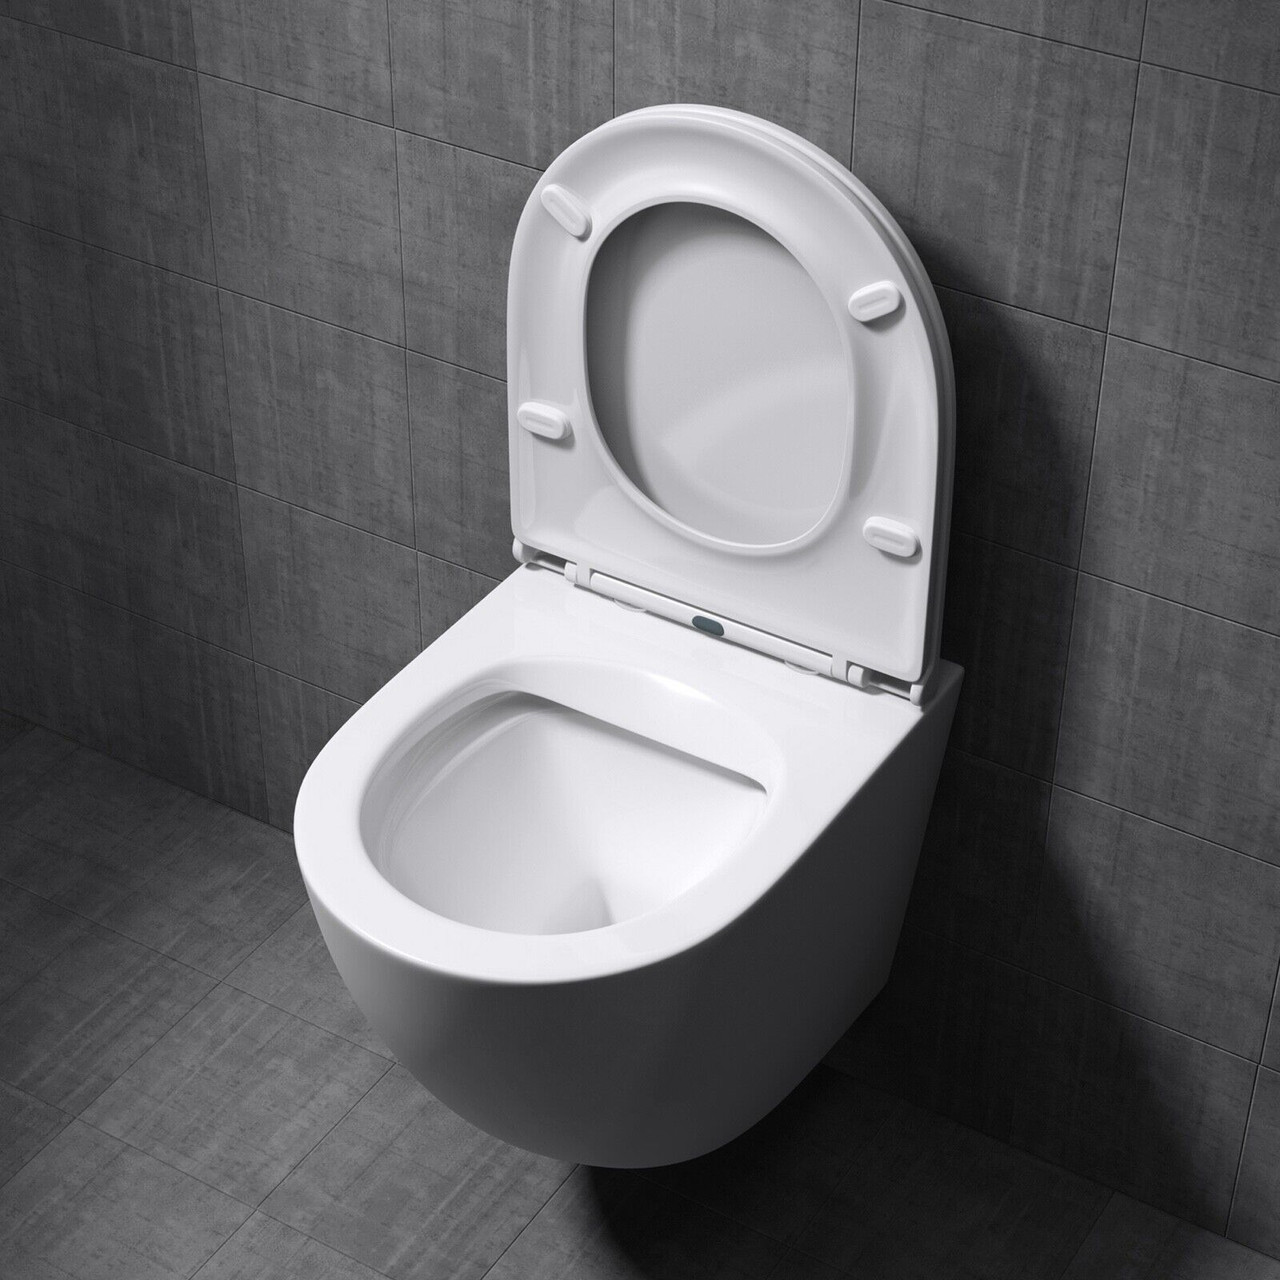 Le WC suspendus, avec réservoir encastré dans un mur ou muret, est la  solution moderne pour un espace plus design et facile à entretenir. Les WC  suspendus sont synonymes d'élégance et de